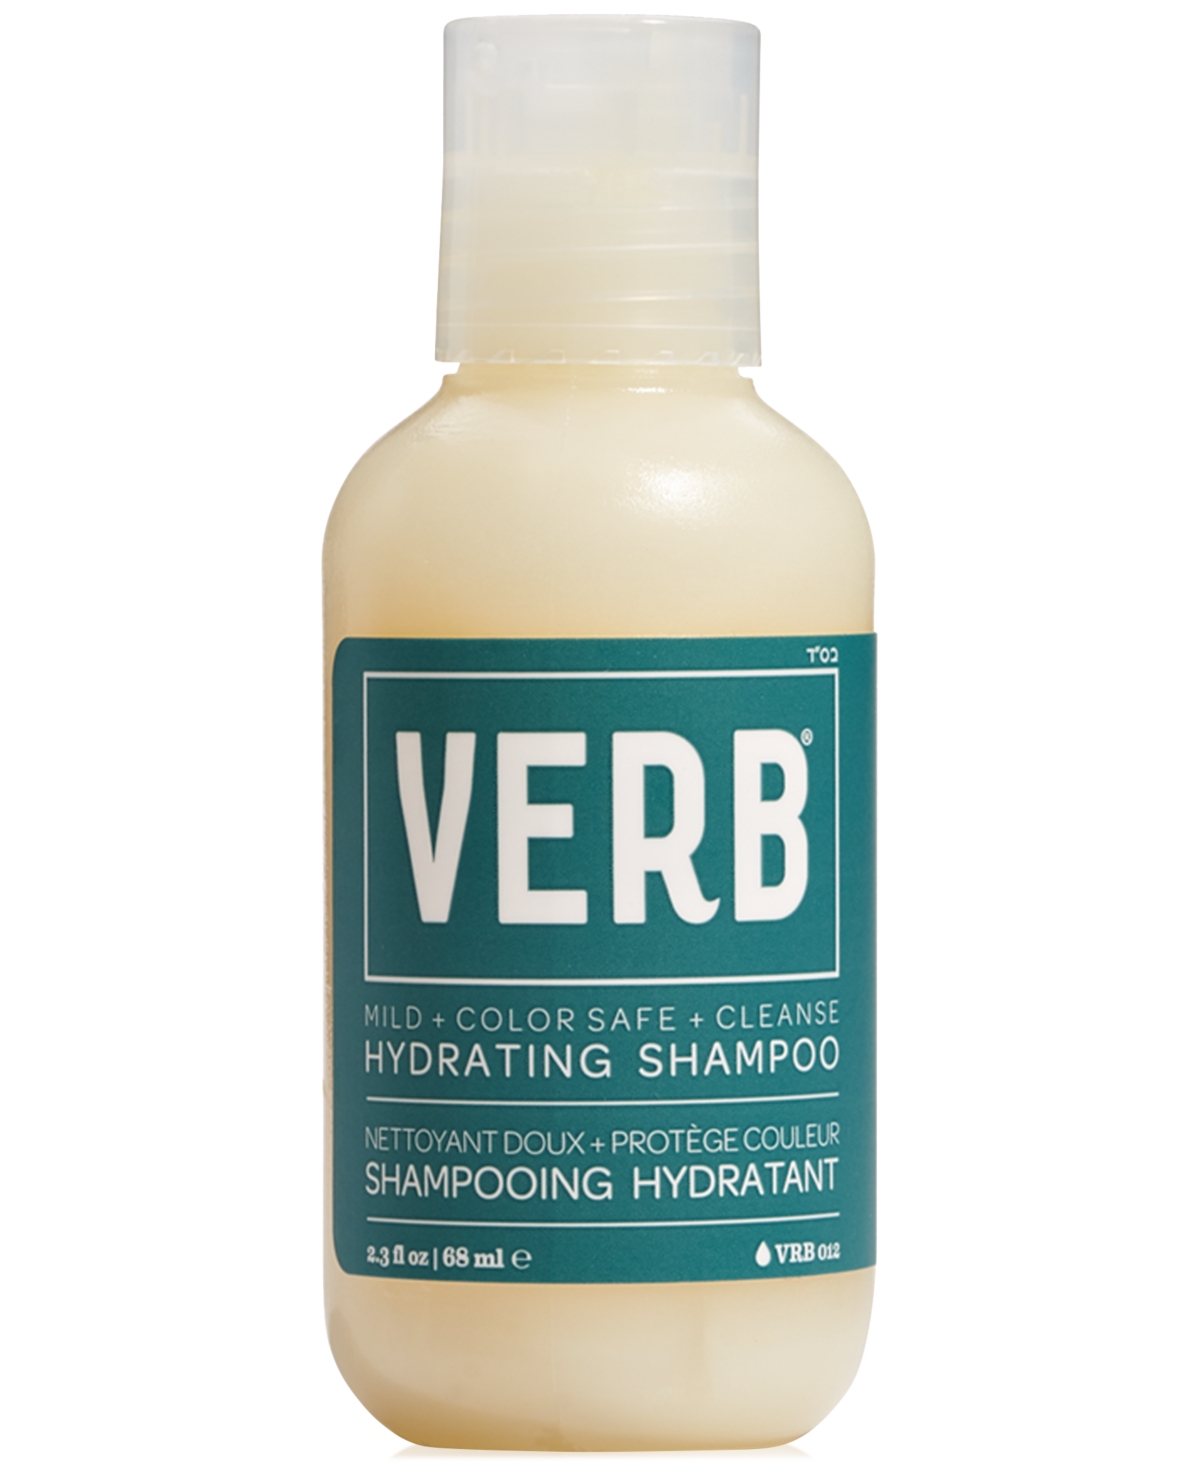 Verb Hydrating Shampoo, 2.3 Oz.